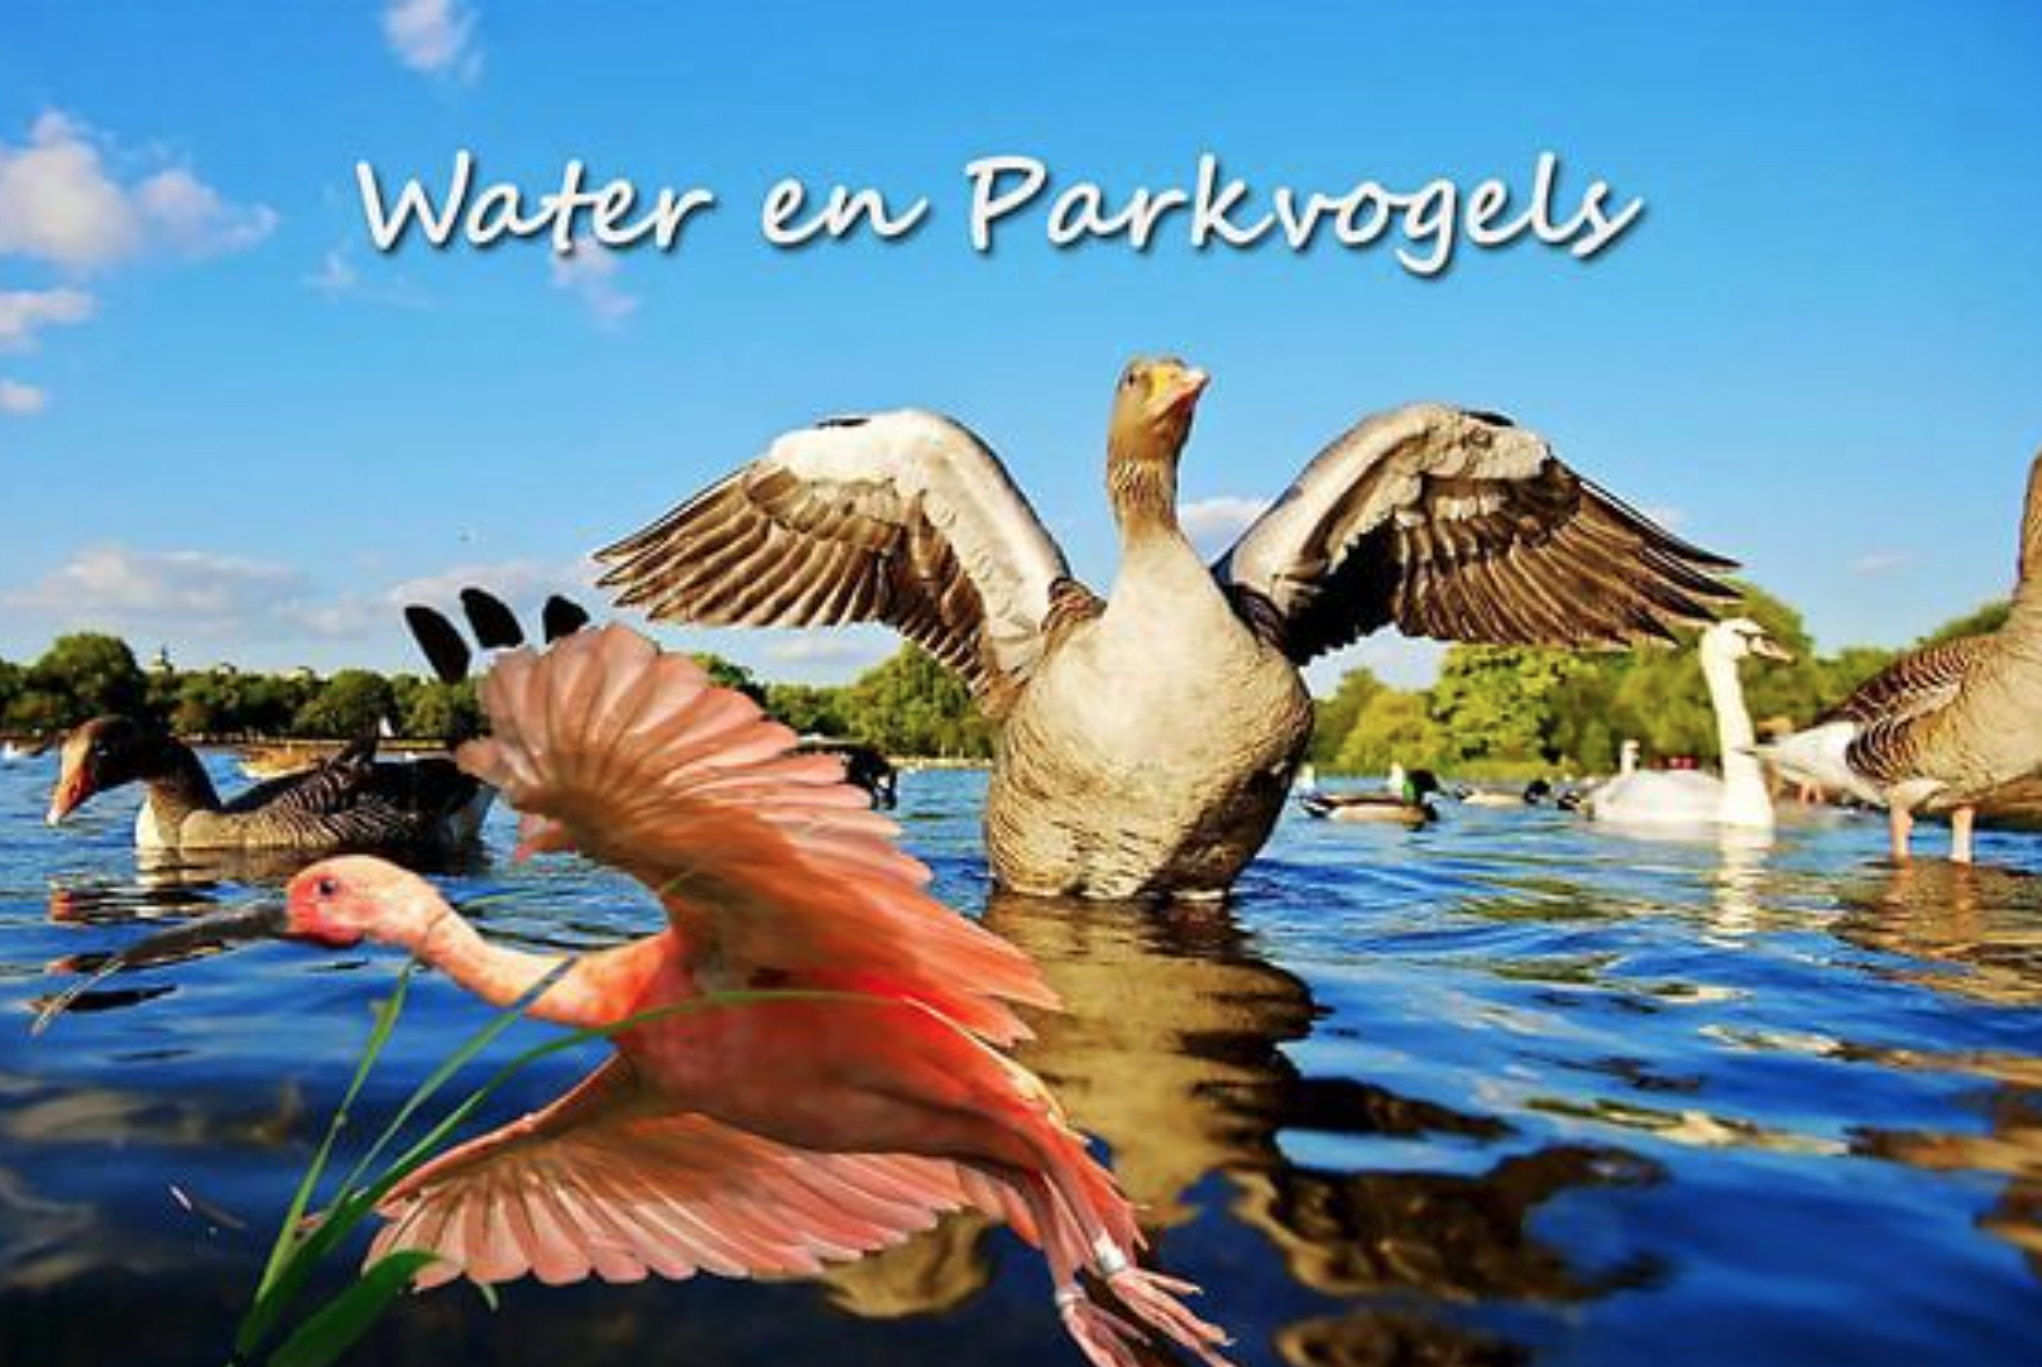 Natuur – water en parkvogels